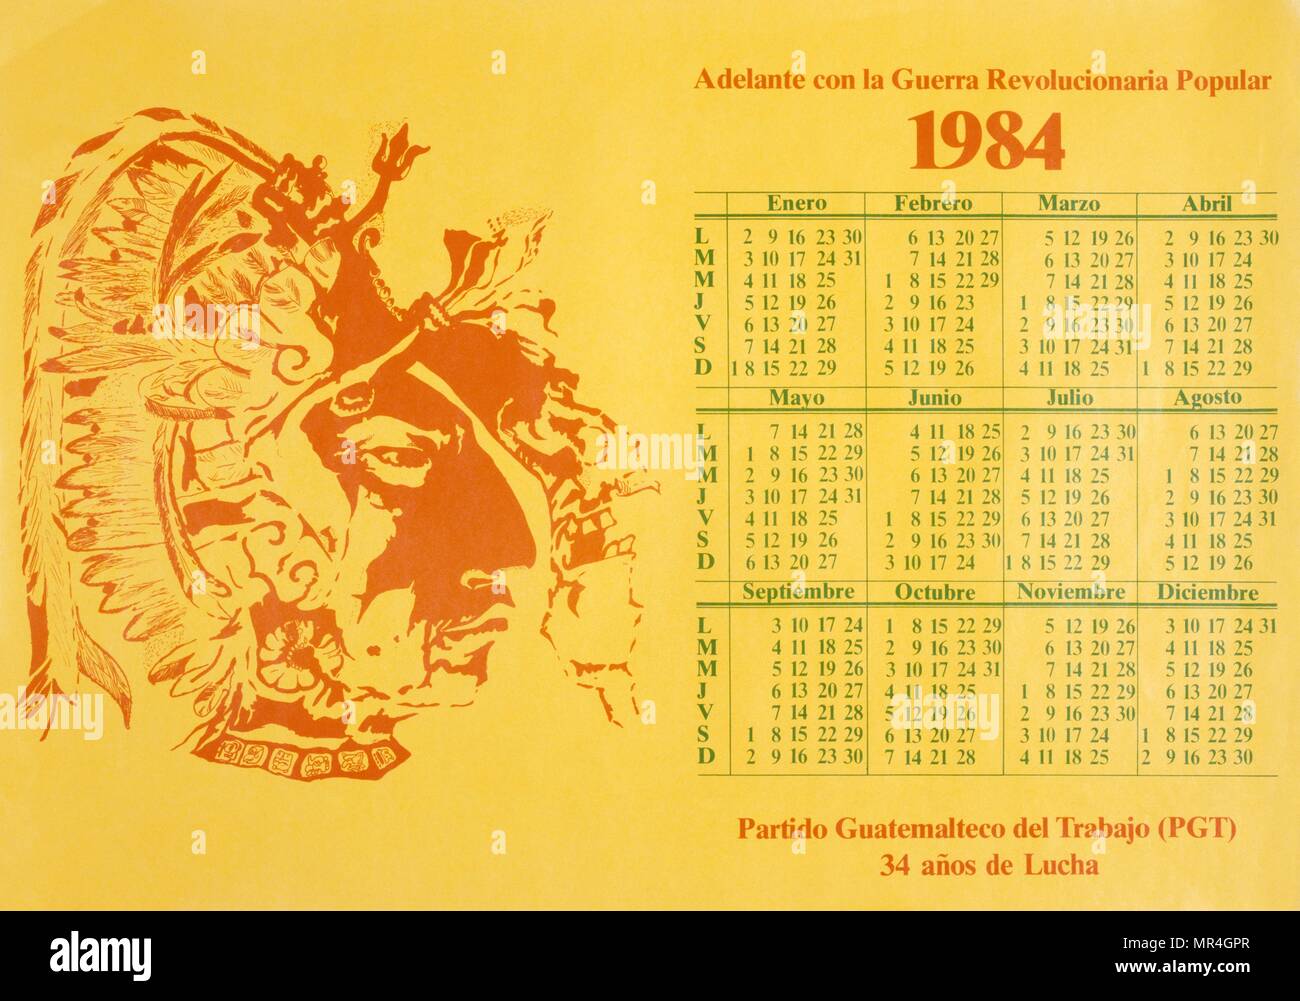 Calendrier de la propagande révolutionnaire guatémaltèque, 1984 Banque D'Images